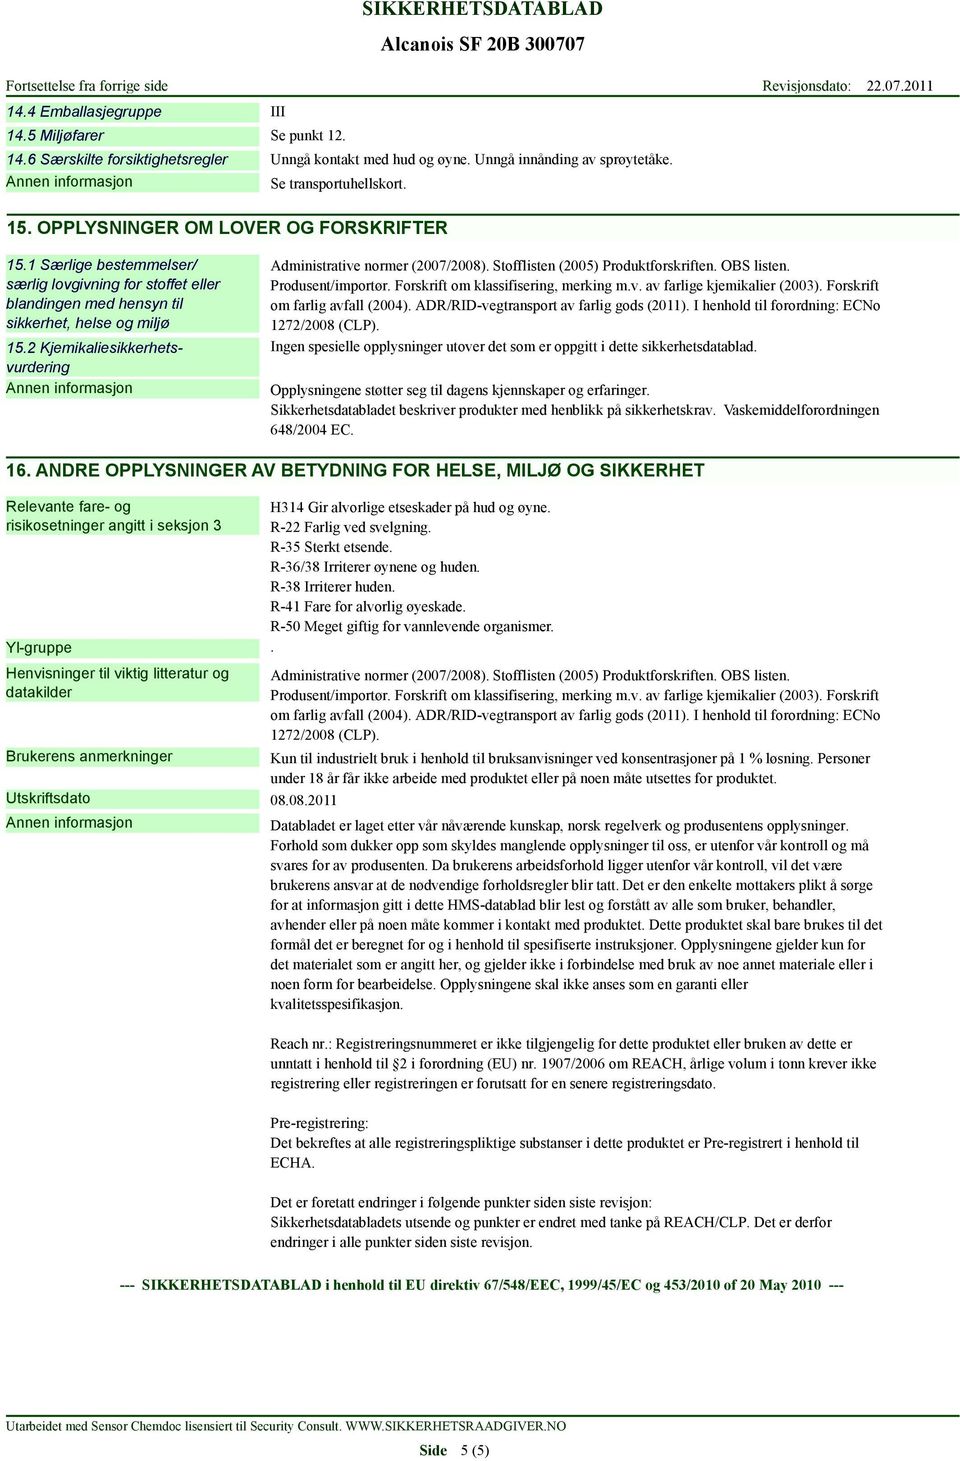 2 Kjemikaliesikkerhetsvurdering Administrative normer (2007/2008). Stofflisten (2005) Produktforskriften. OBS listen. Produsent/importør. Forskrift om klassifisering, merking m.v. av farlige kjemikalier (2003).